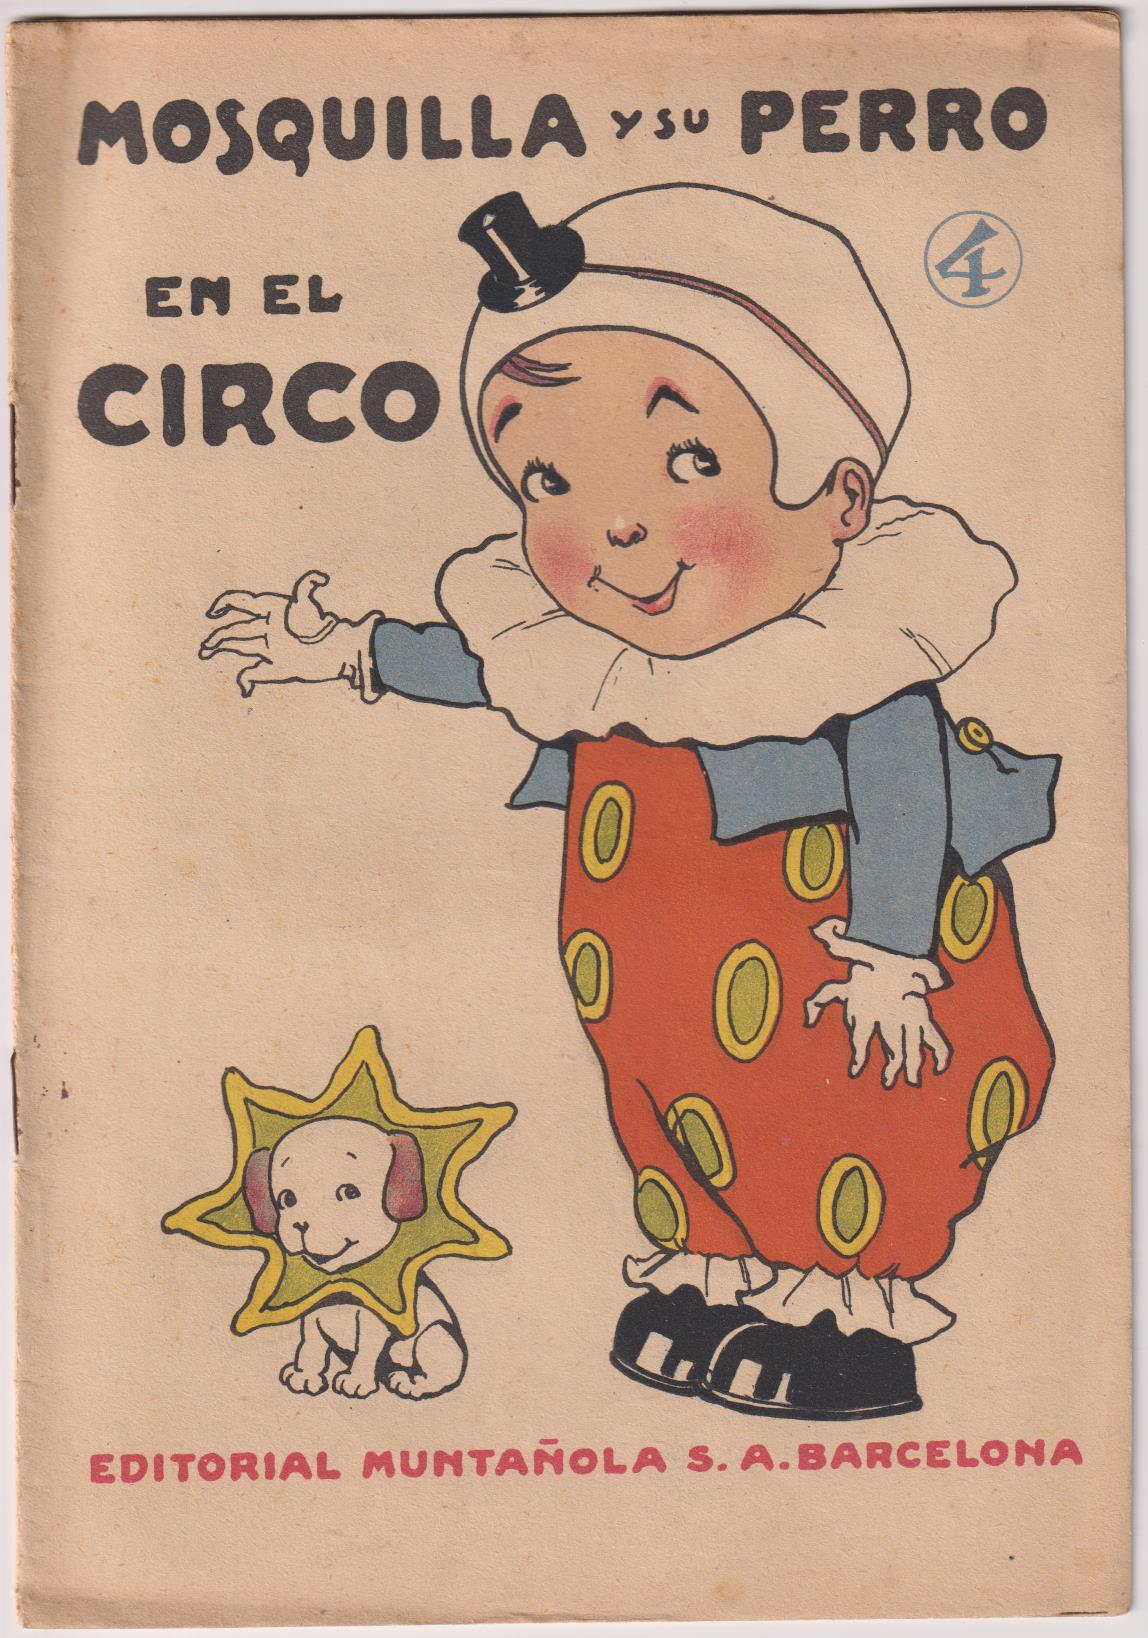 Mosquilla y su perro nº 4. En el Circo por Maese Antoni. Ilustraciones de Freixas